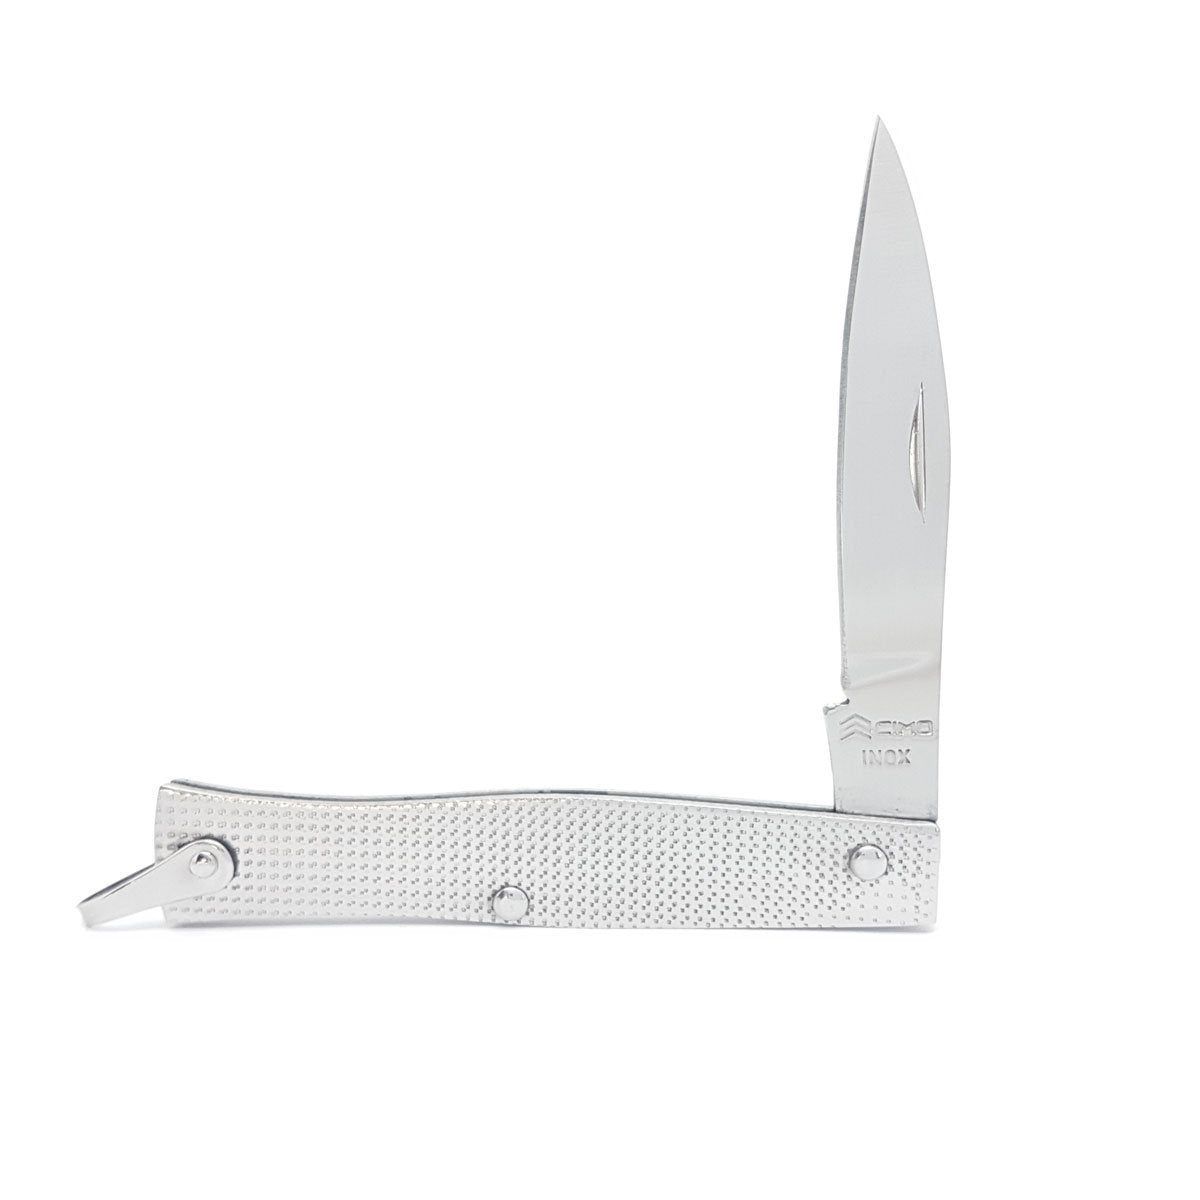 Canivete Cimo Inox Tradicional - 220/6